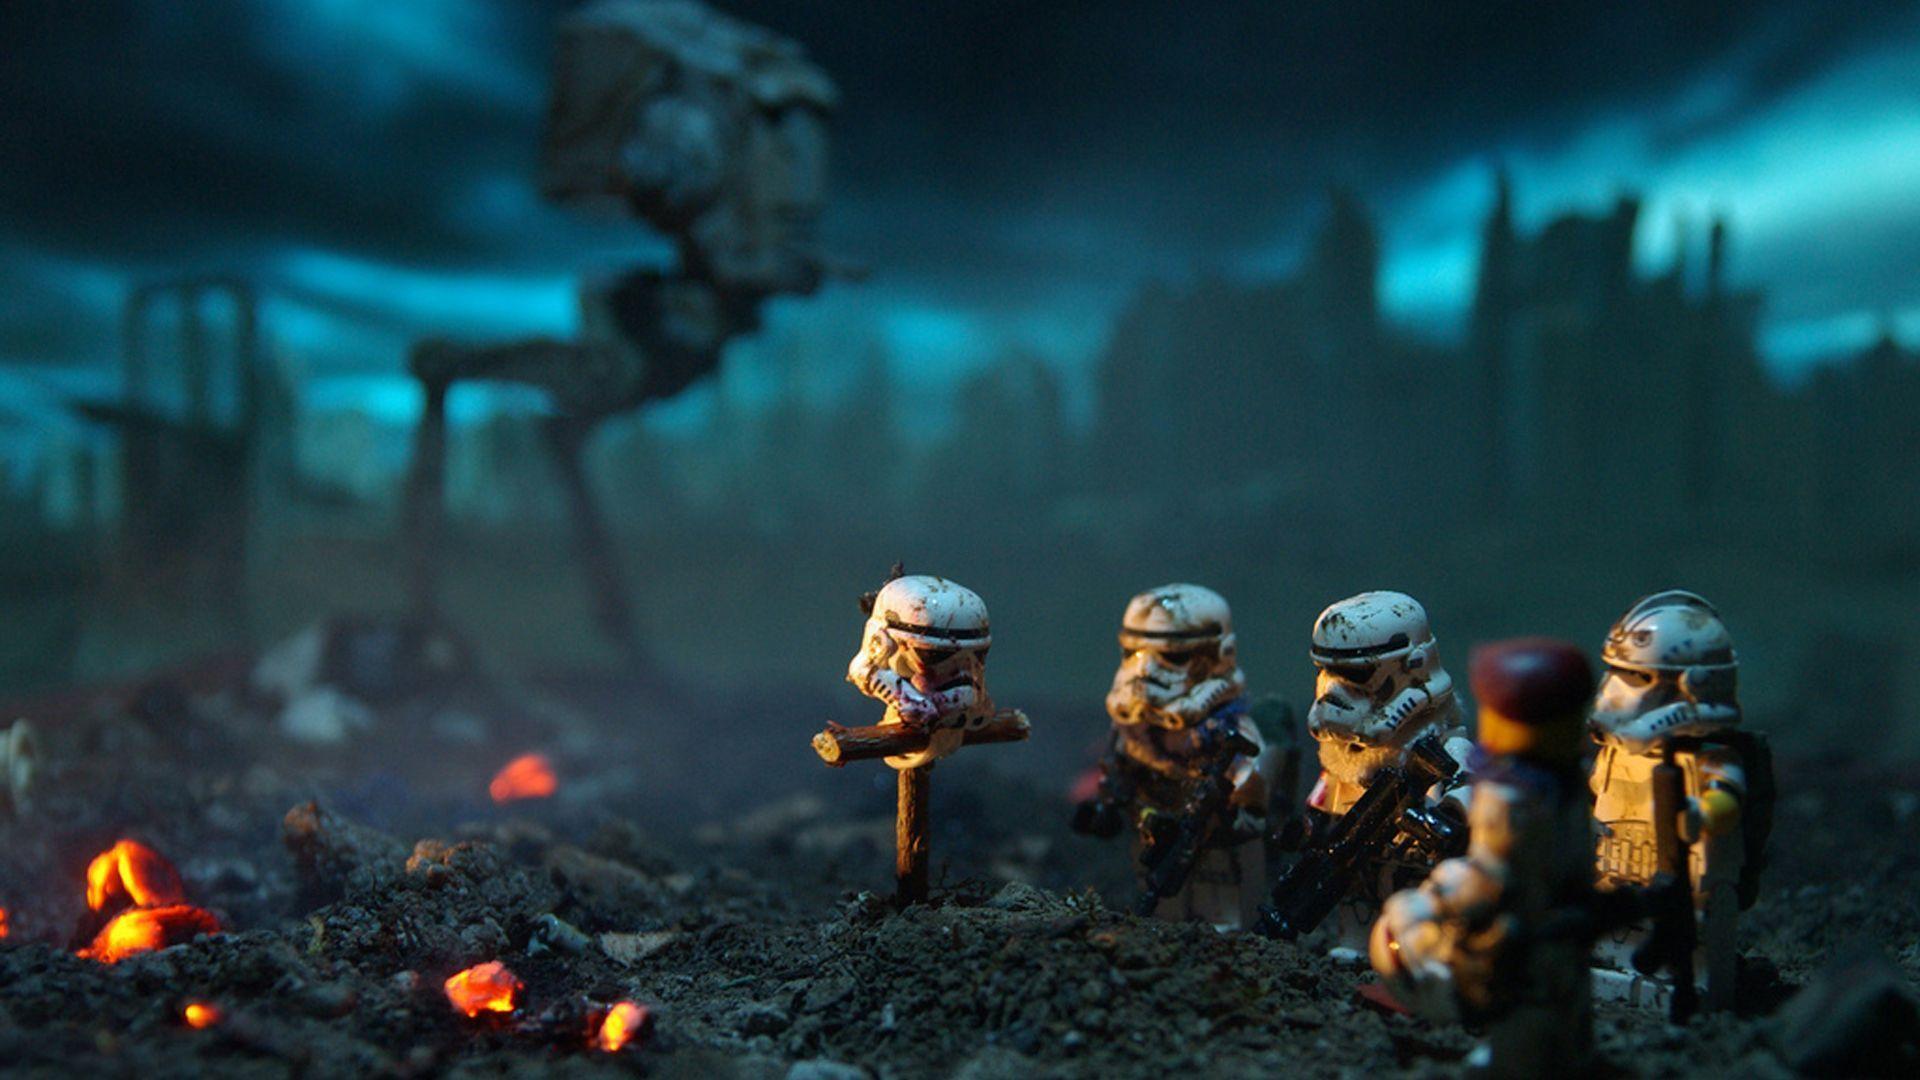 Stormtrooper lego figurines Wallpaper #